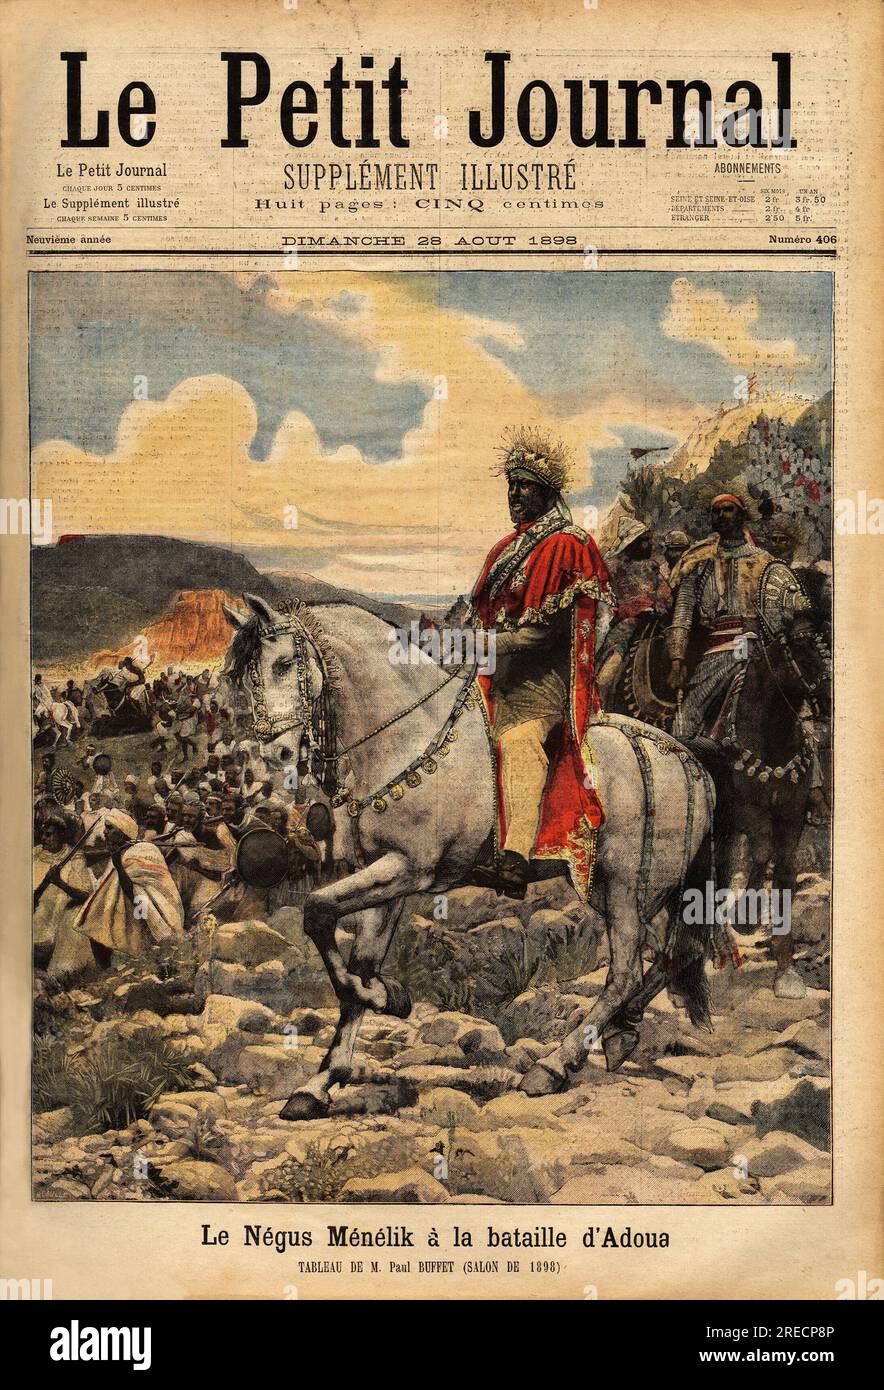 Le negus Menelik II ( 1844-1913) souverain d'ethiopie, vainqueur a la bataille d'Adoua en 1896, contre les troupes coloniales italiennes. Gravure in 'Le petit journal' 2881898.  . Stock Photo